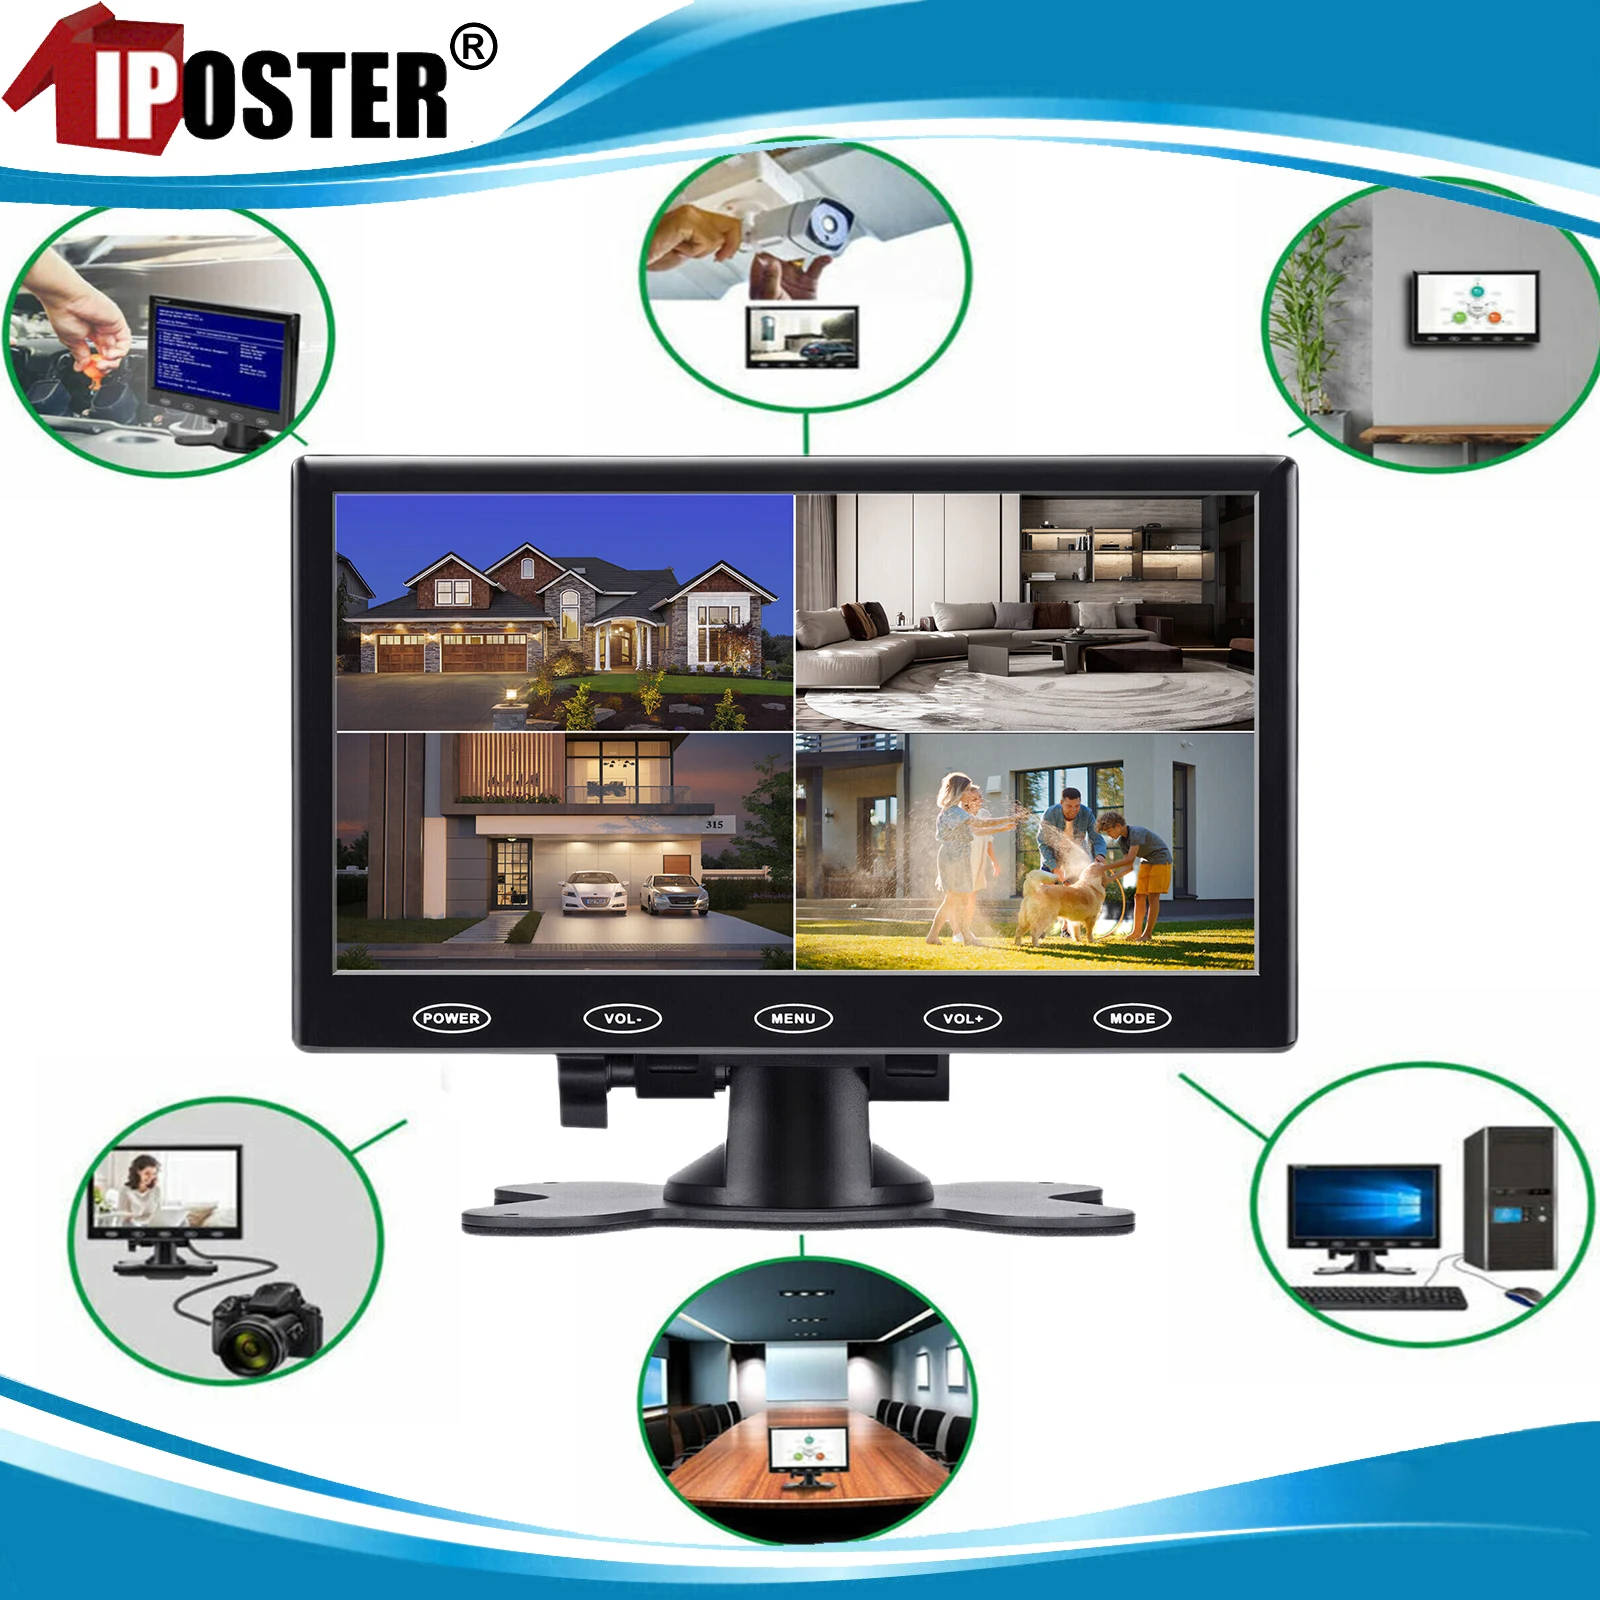 

iPoster 7" Portable HD Monitor LCD Screen Built-in AV VGA HDMI Speaker AV for PC Car Digital Camera 4 Split Screen For RV Bus